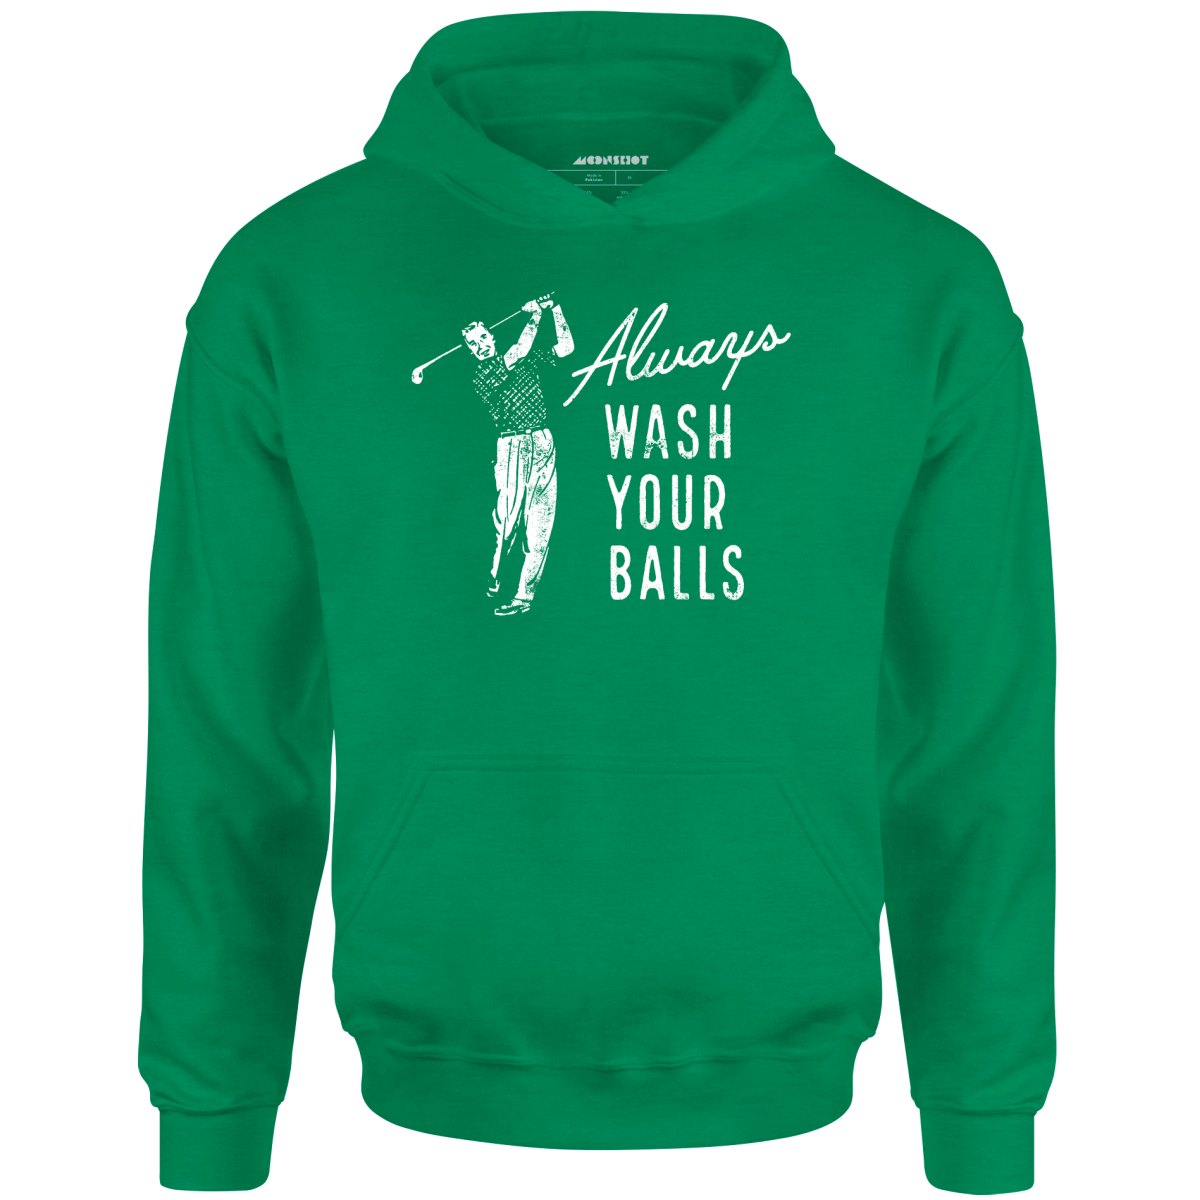 Always Wash Your Balls - Unisex Hoodie